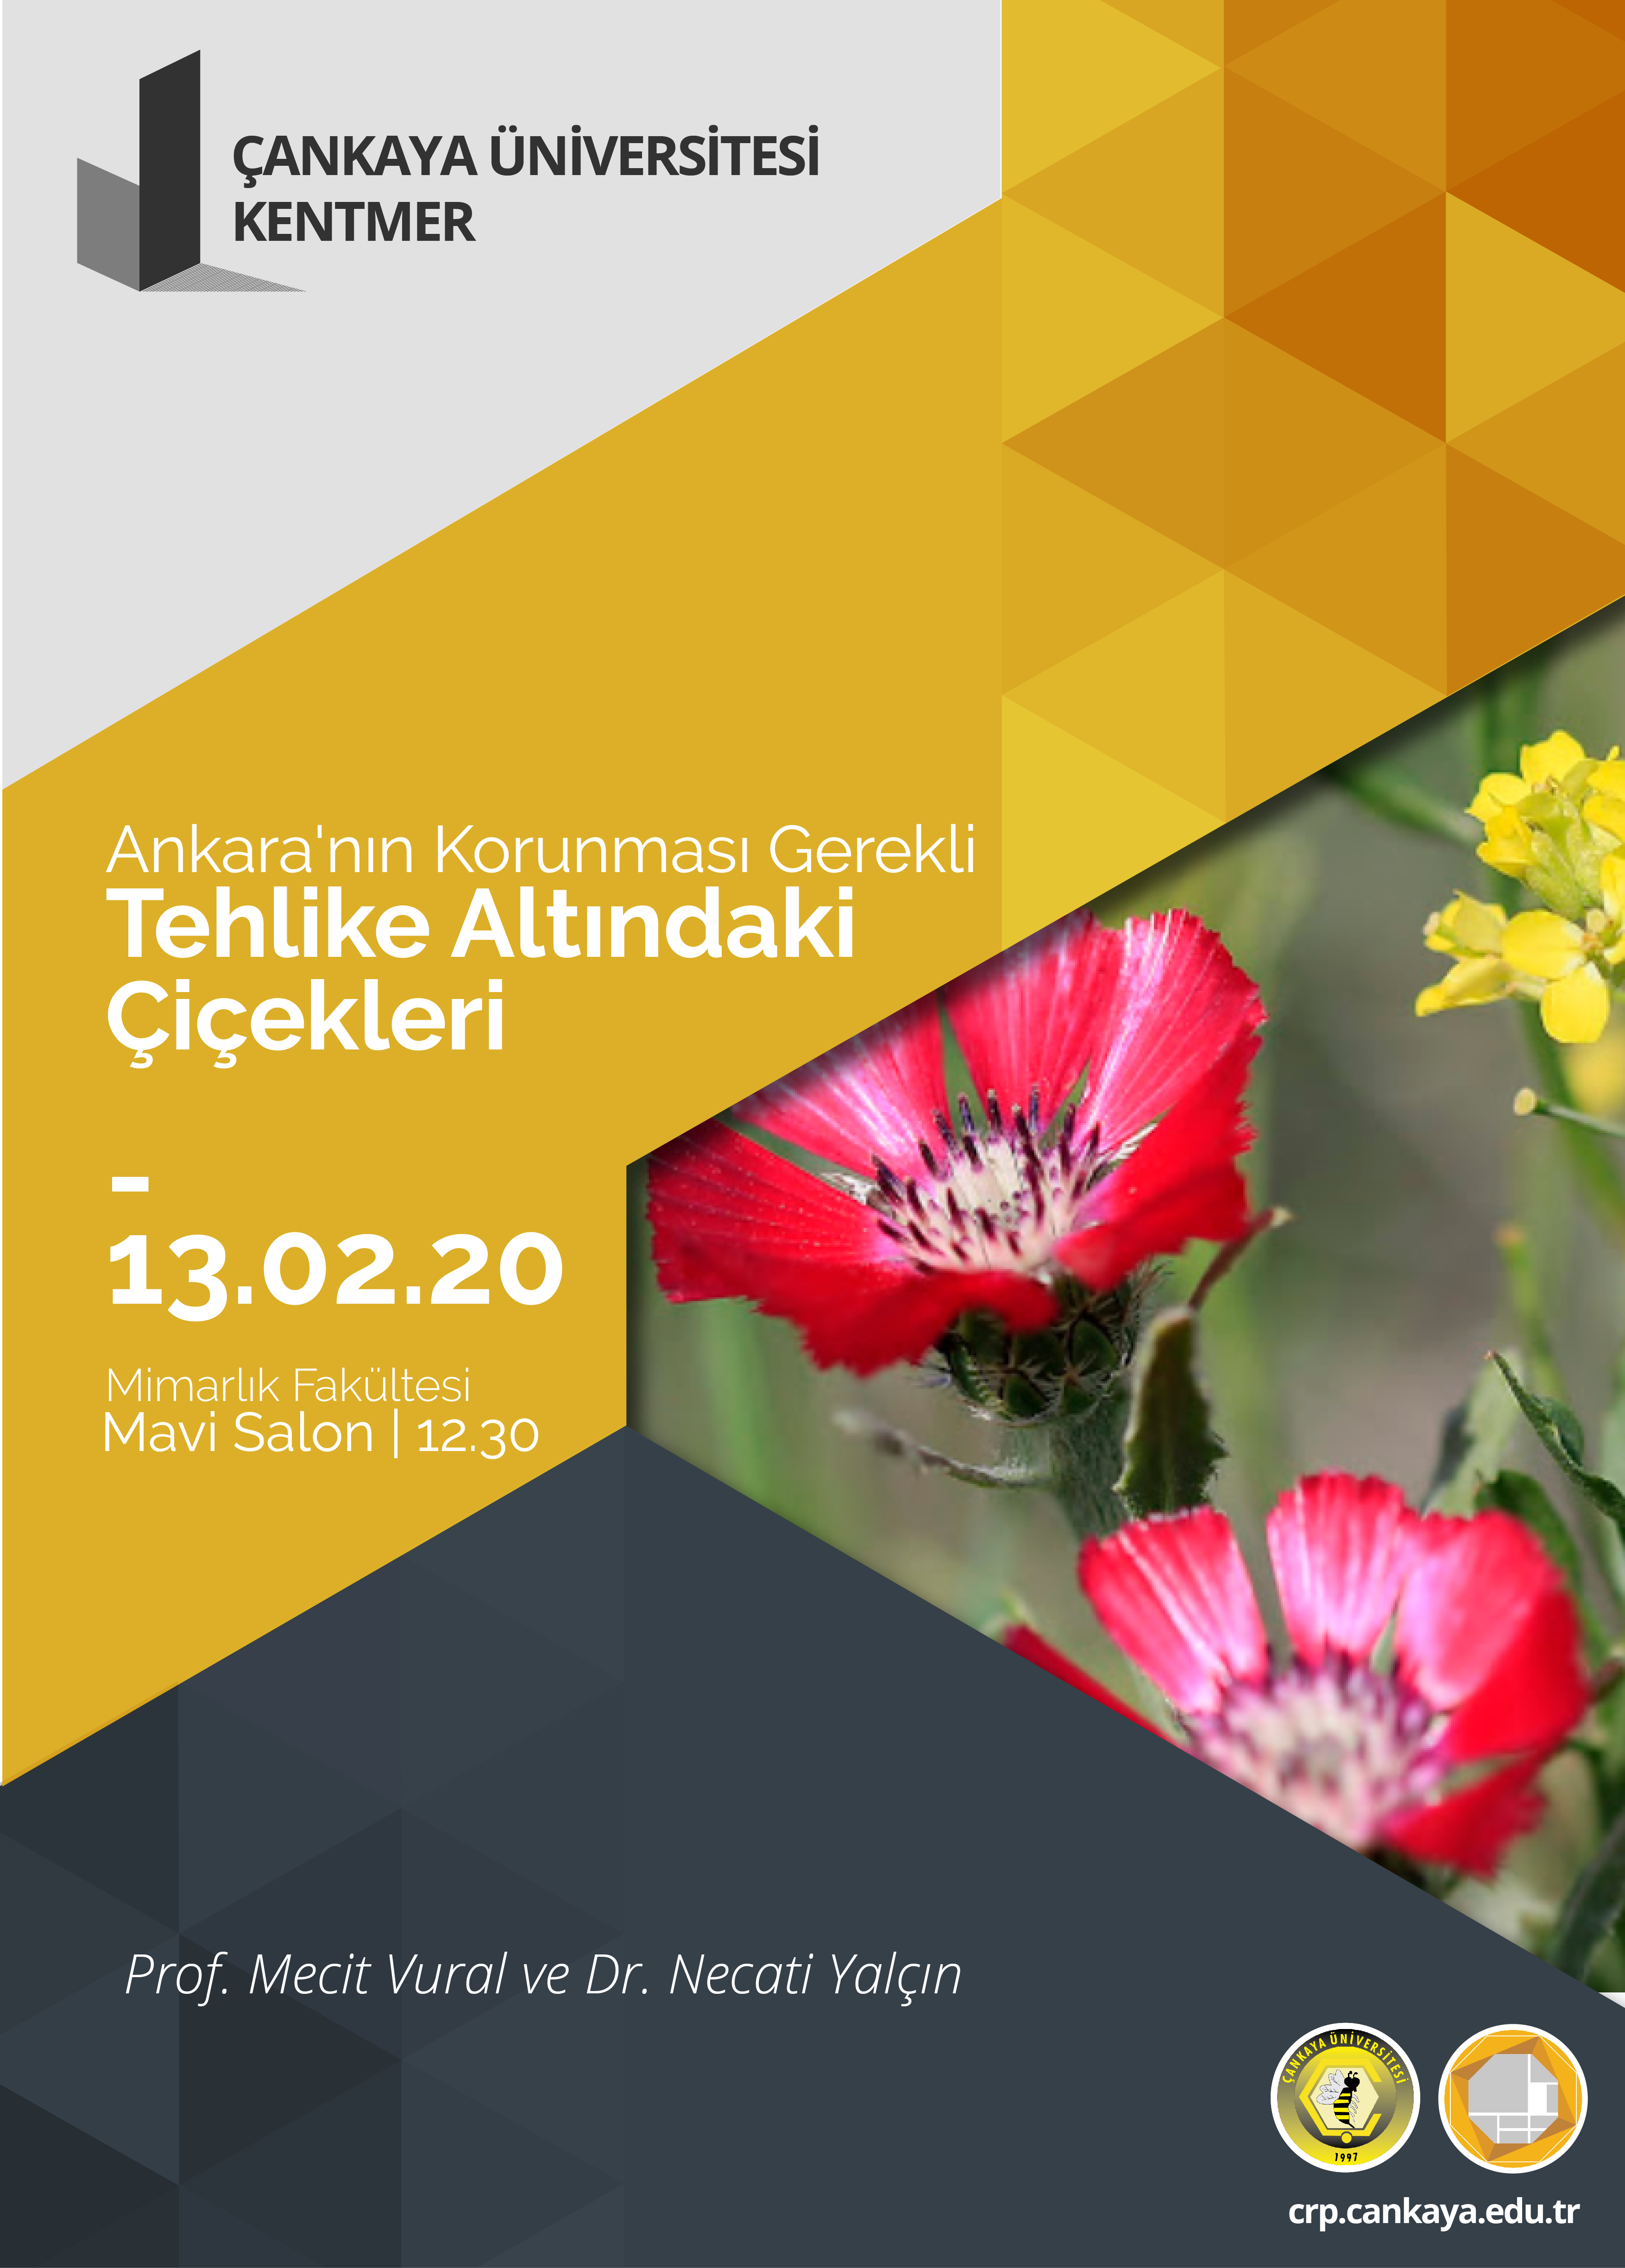 Kentmer – Ankara’nın Tehlike Altındaki Çiçekleri